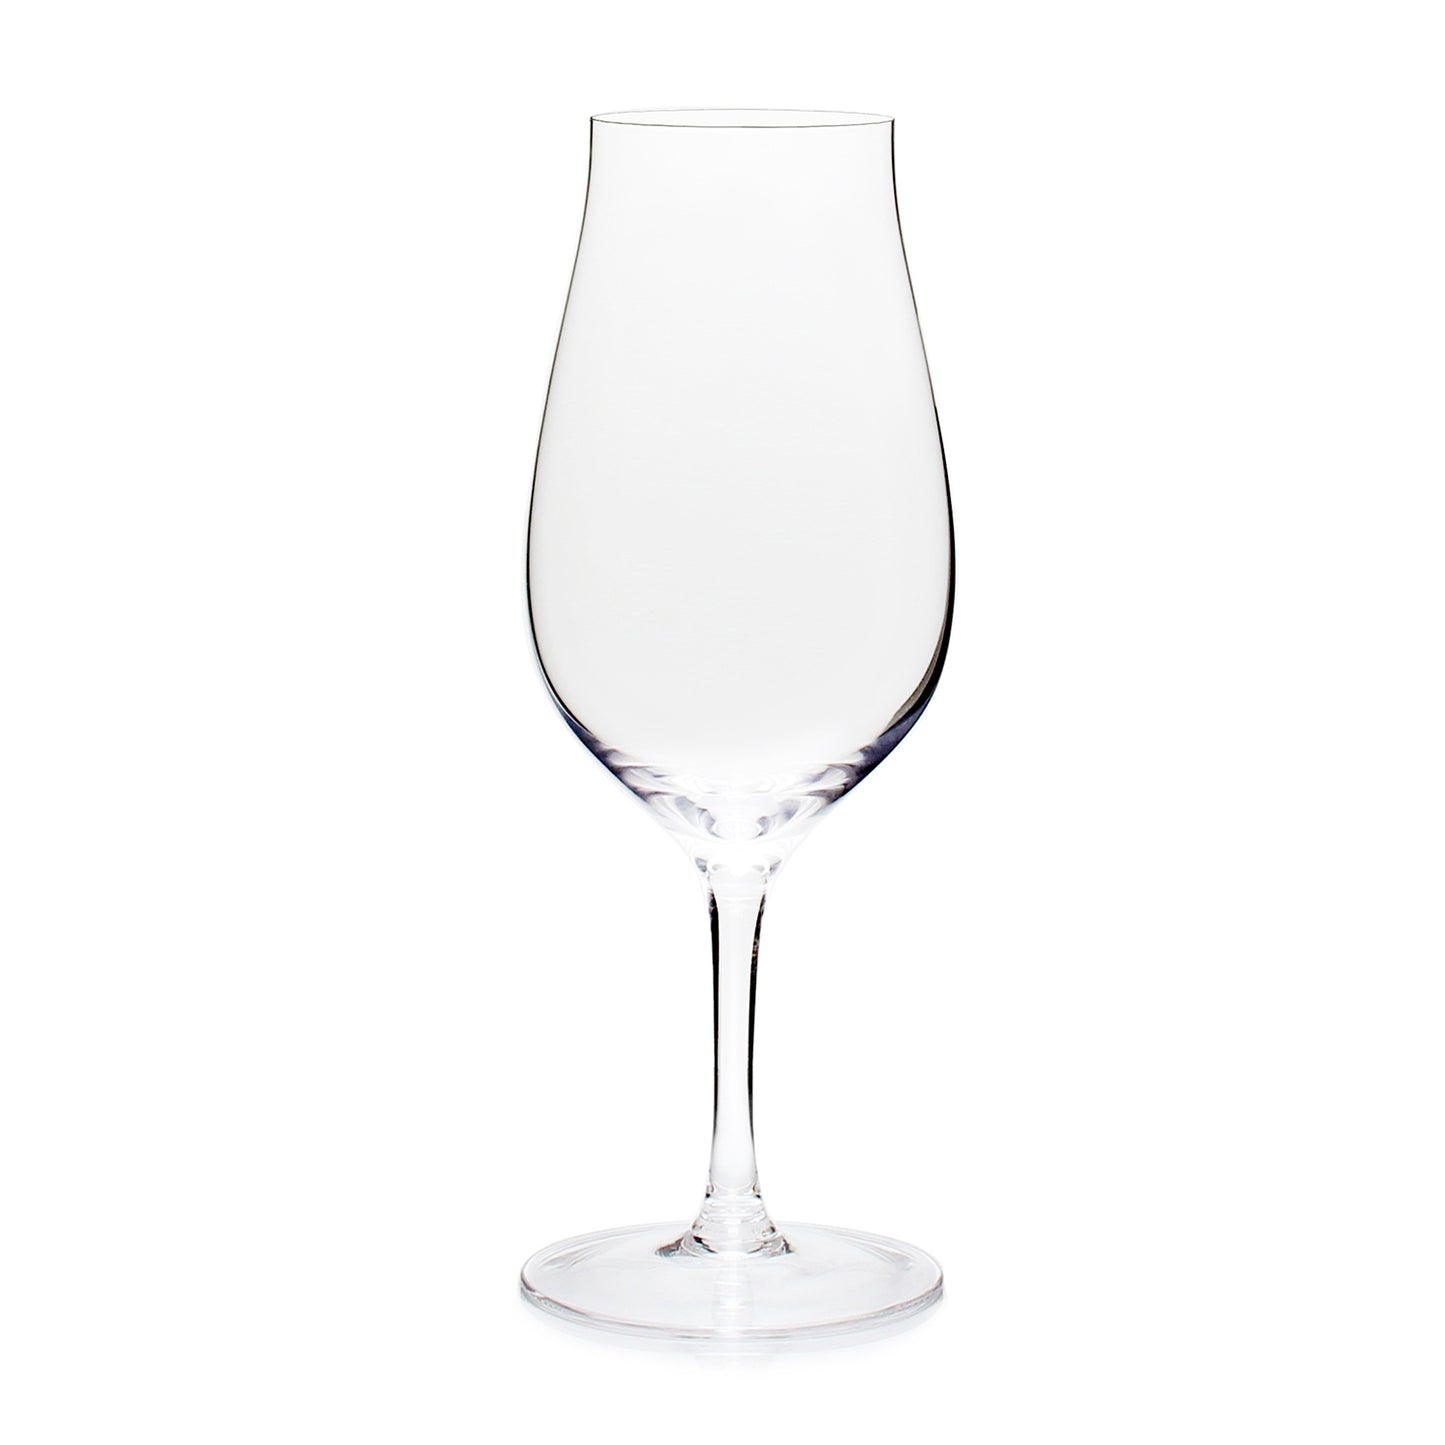 Ravenscroft Crystal Scotch Snifter Glass (Set of 4)